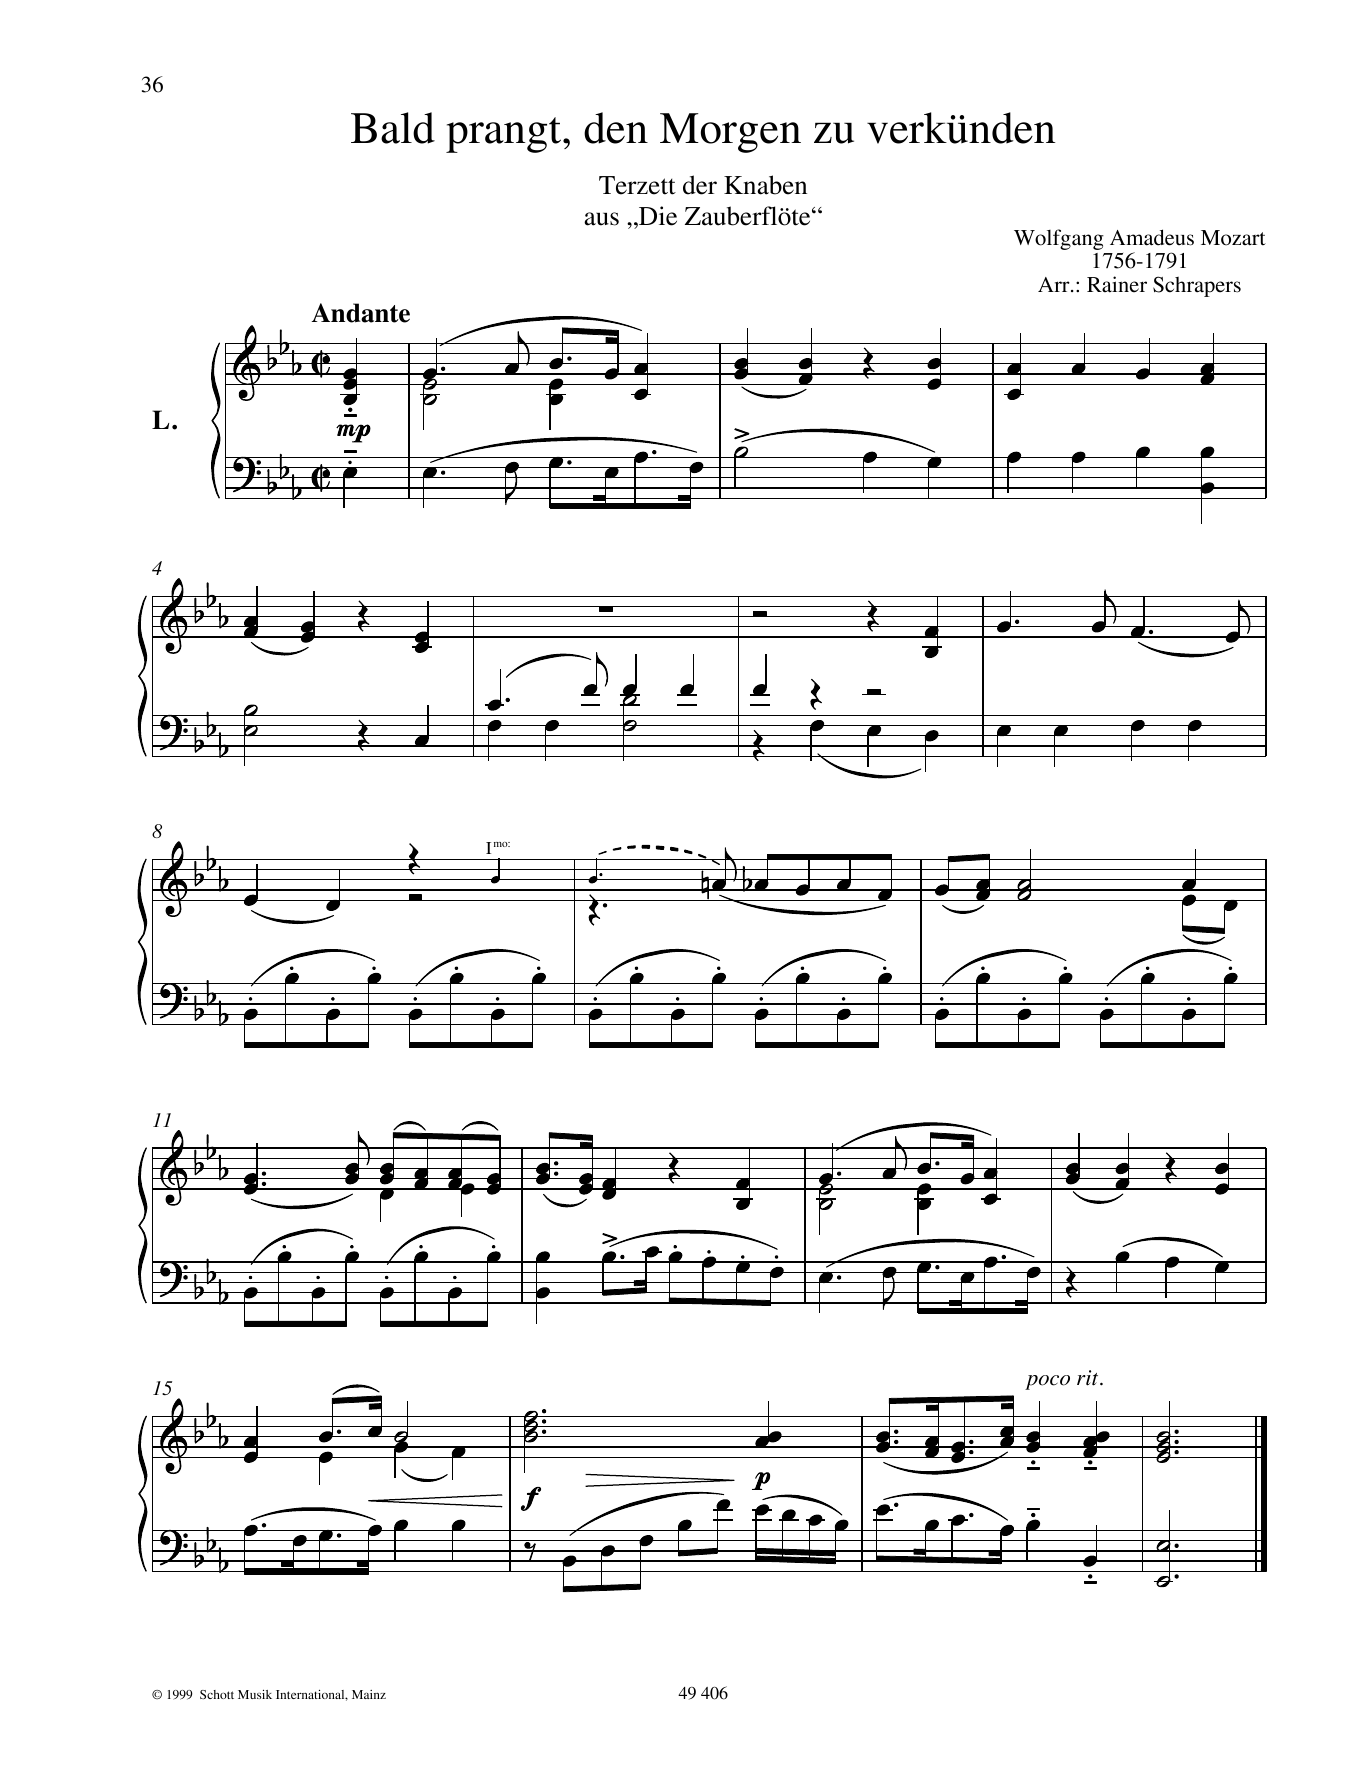 Download Wolfgang Amadeus Mozart Bald prangt, den Morgen zu verkünden Sheet Music and learn how to play Piano Duet PDF digital score in minutes